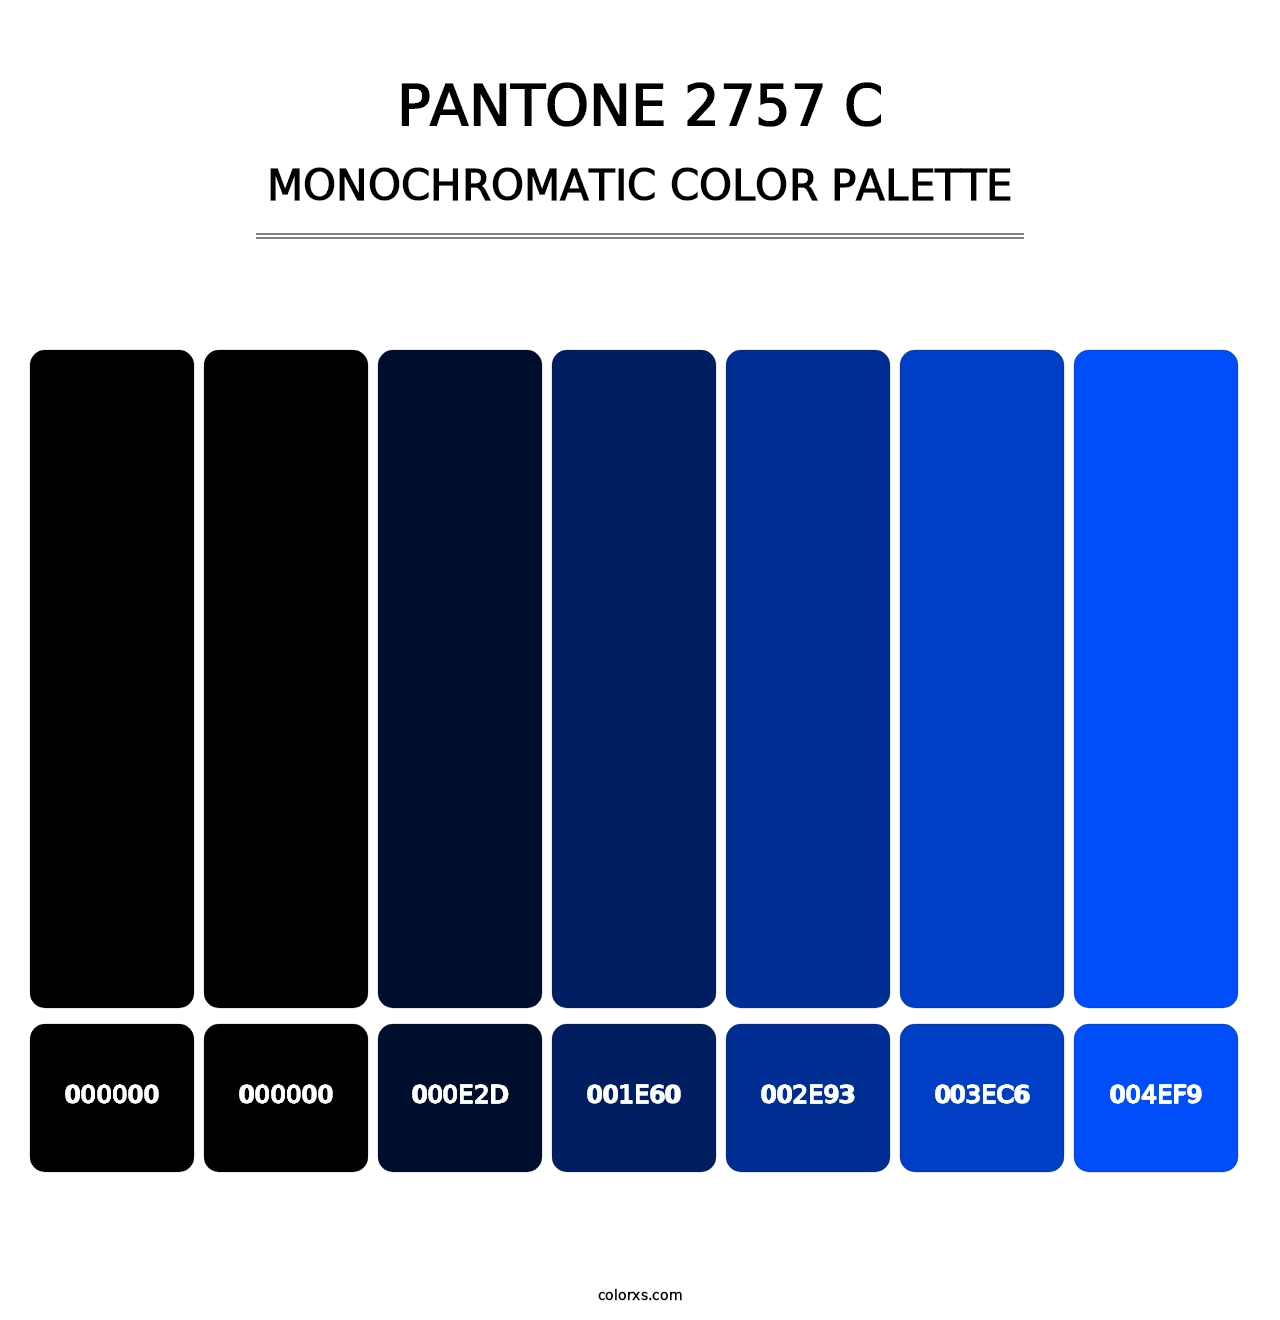 PANTONE 2757 C - Monochromatic Color Palette